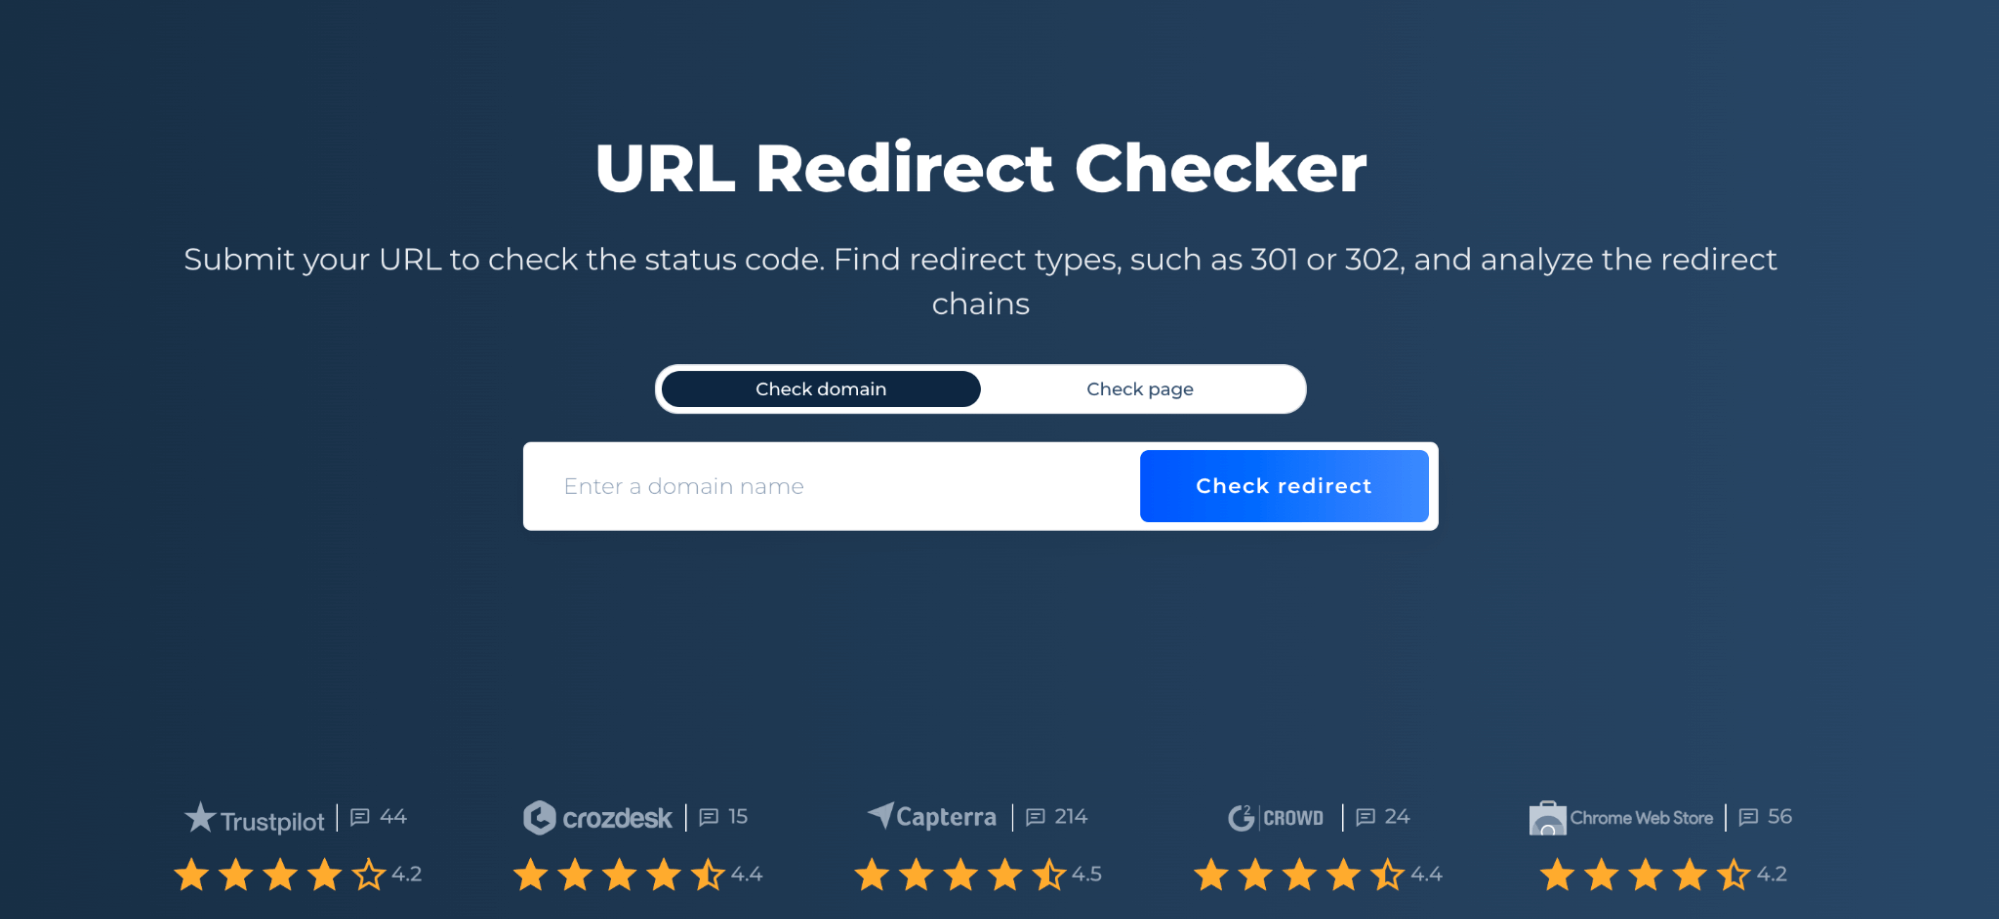 URL Redirect CheckerTool for identifying HTTP 300 status code